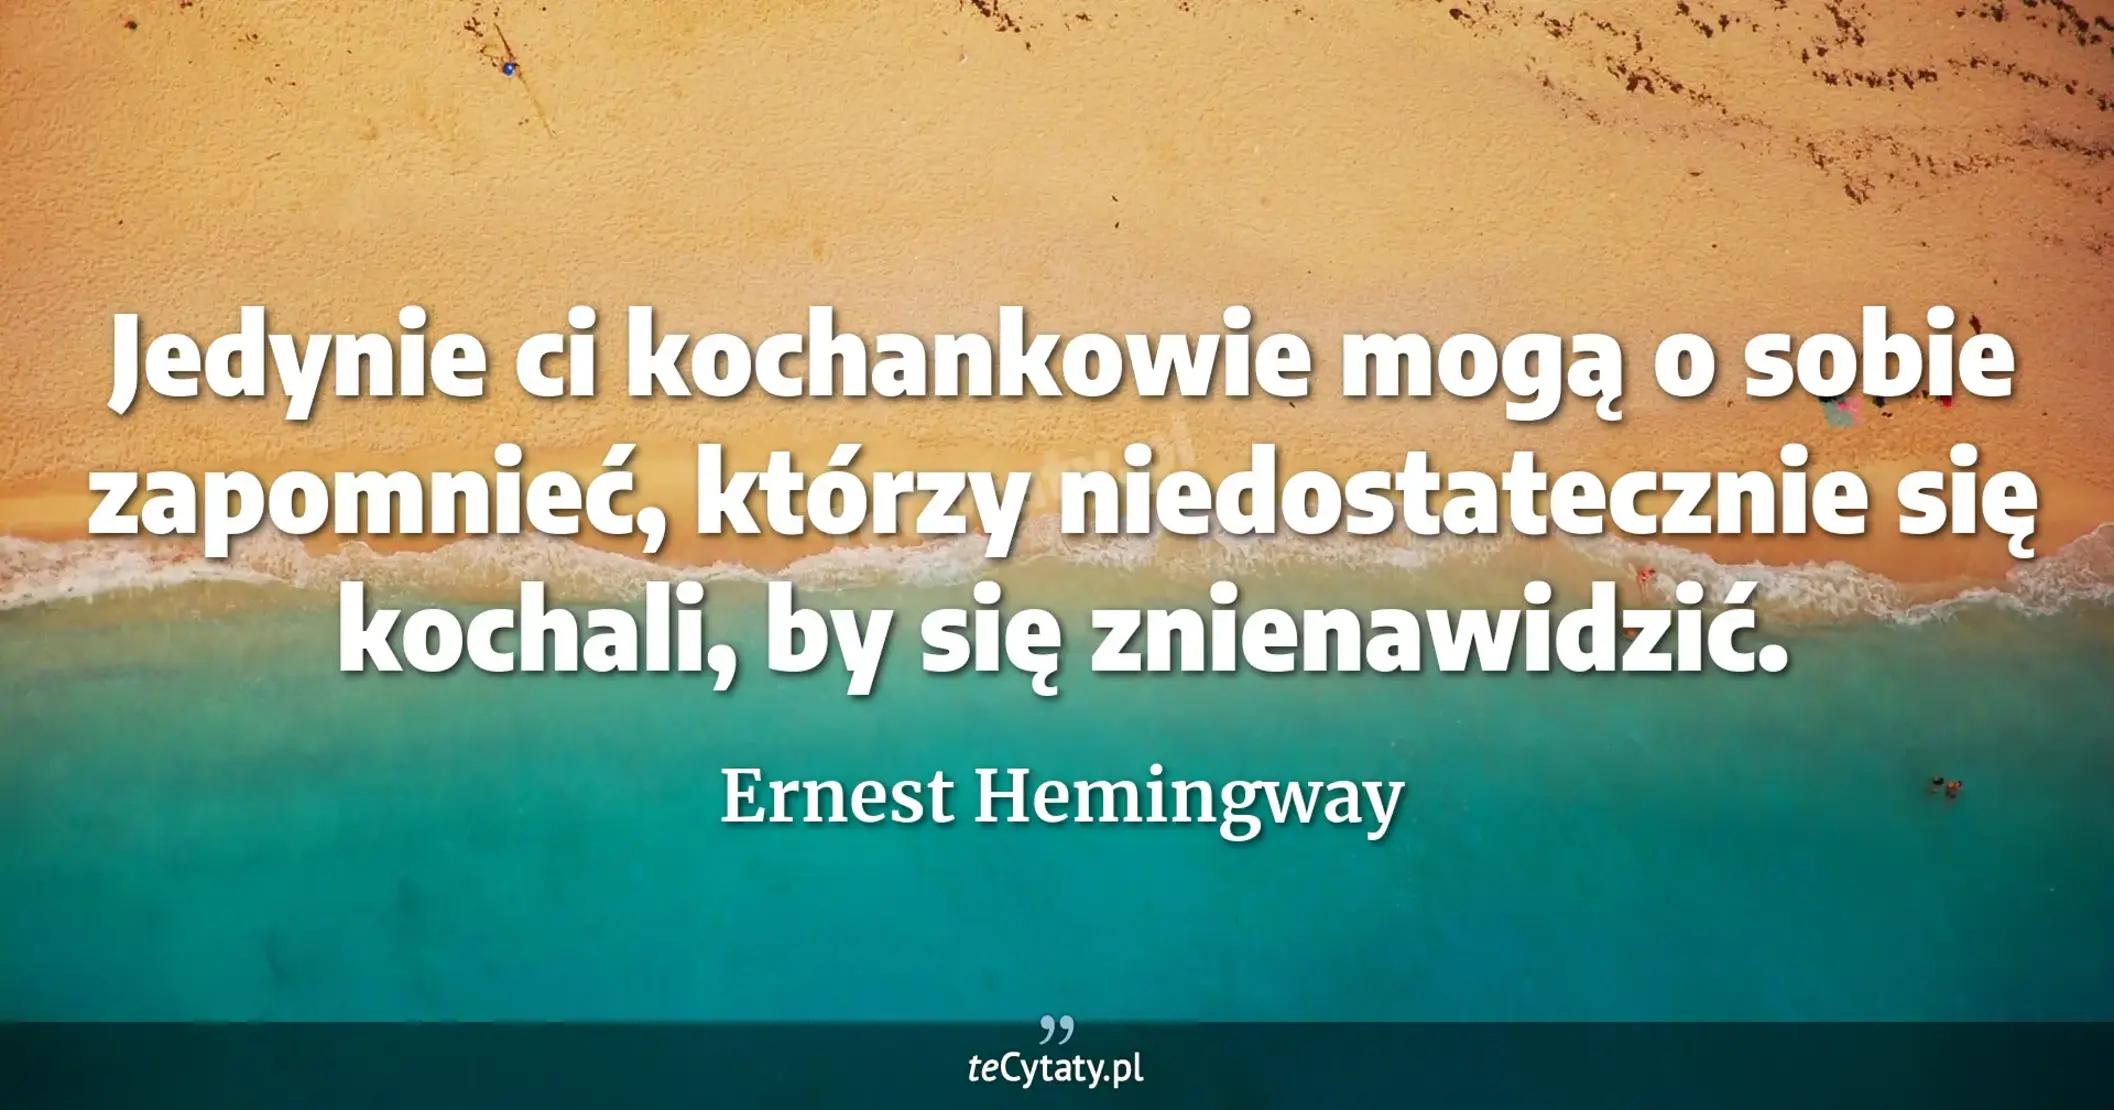 Jedynie ci kochankowie mogą o sobie zapomnieć, którzy niedostatecznie się kochali, by się znienawidzić. - Ernest Hemingway